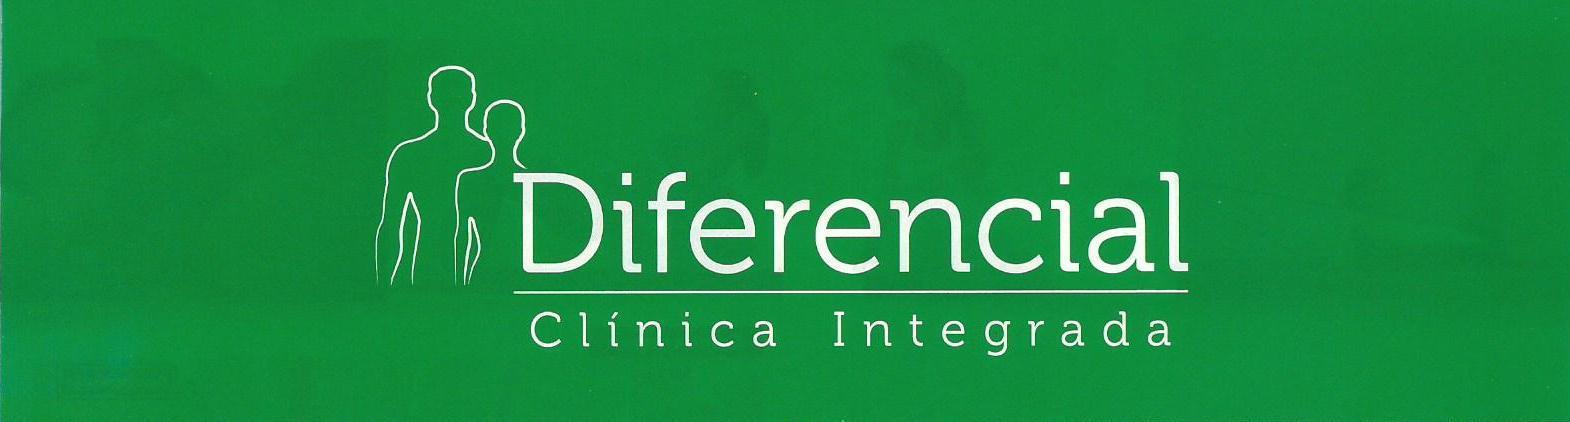 Diferencial Clinica Integrada